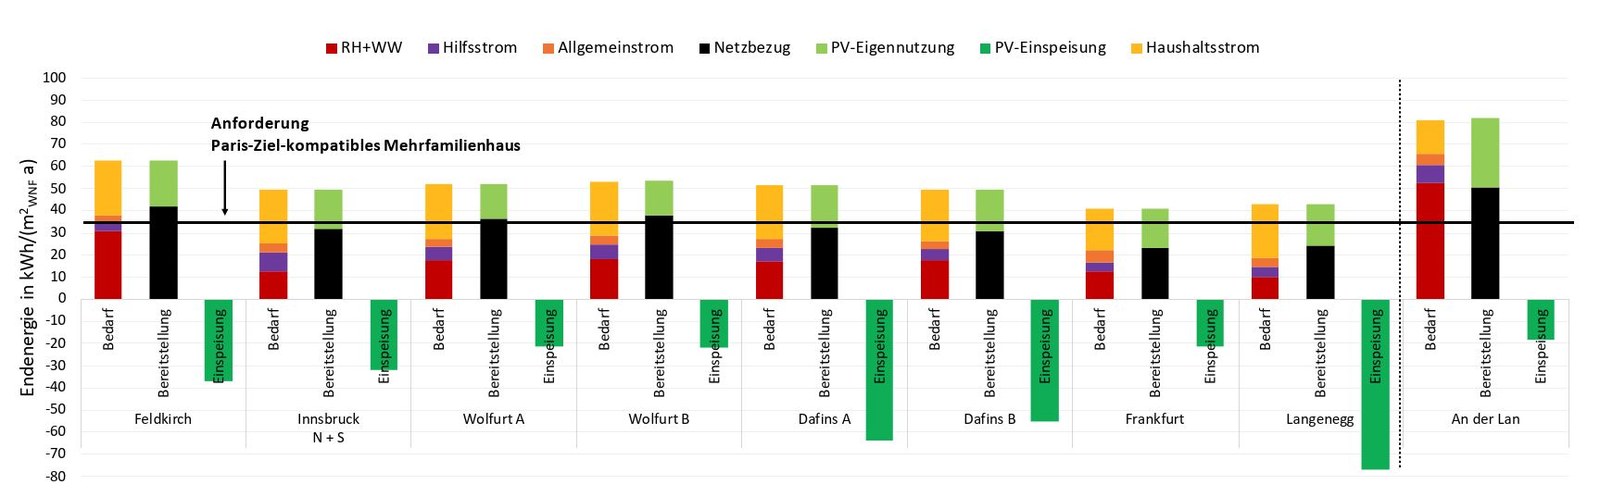 spezifischer Endenergiebedarf der Varianten PVmax in Summe aller Anwendungen gemäß Verbrauchsprognoseberechnung; Bereitstellung durch Netzbezug und PV-Eigennutzung sowie PV-Einspeisung der stromversorgten Gebäude; Projekt Frankfurt nicht dargestellt, da schon in der Realisierungsvariante die maximale PV-Fläche umgesetzt wurde